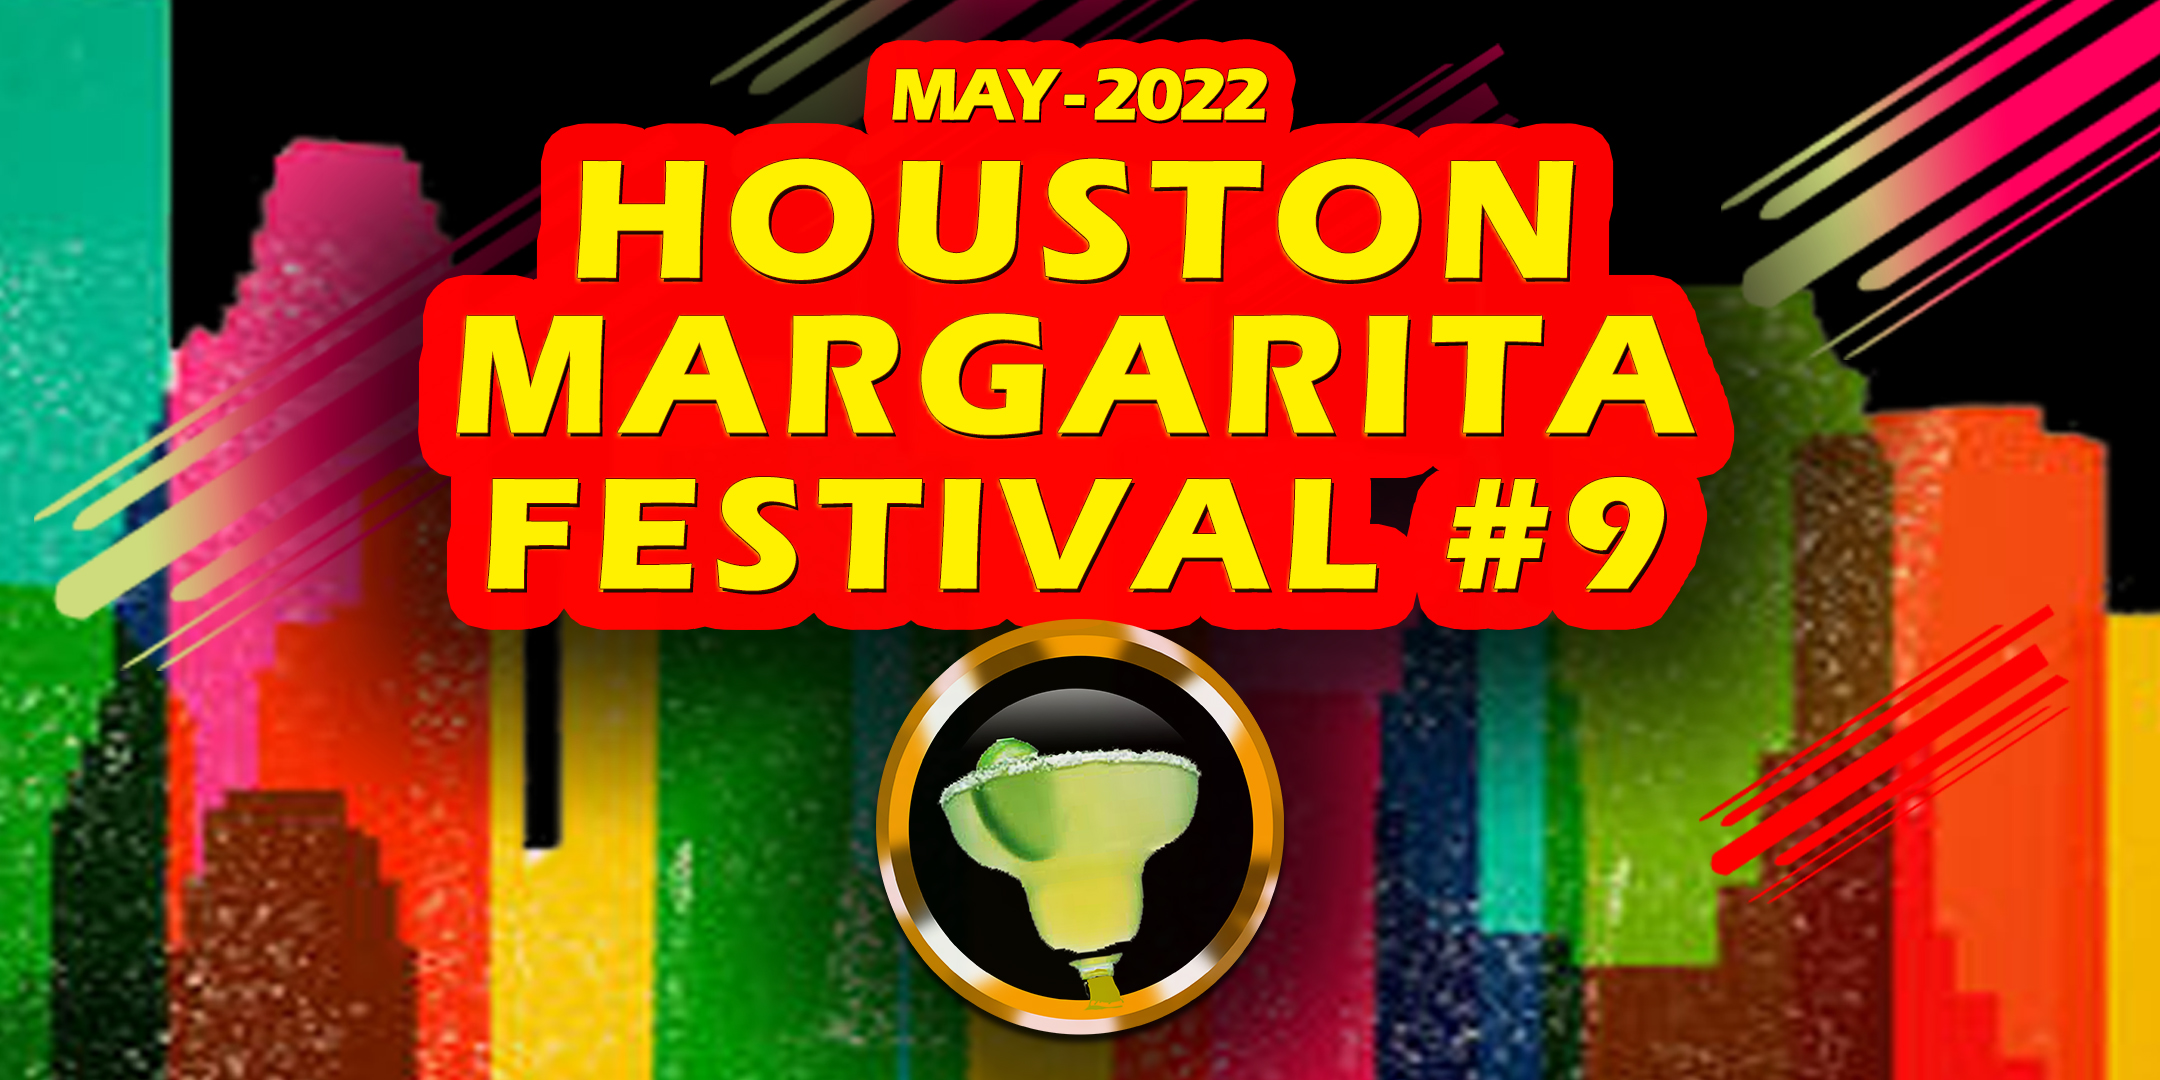 Houston Margarita Festival #9